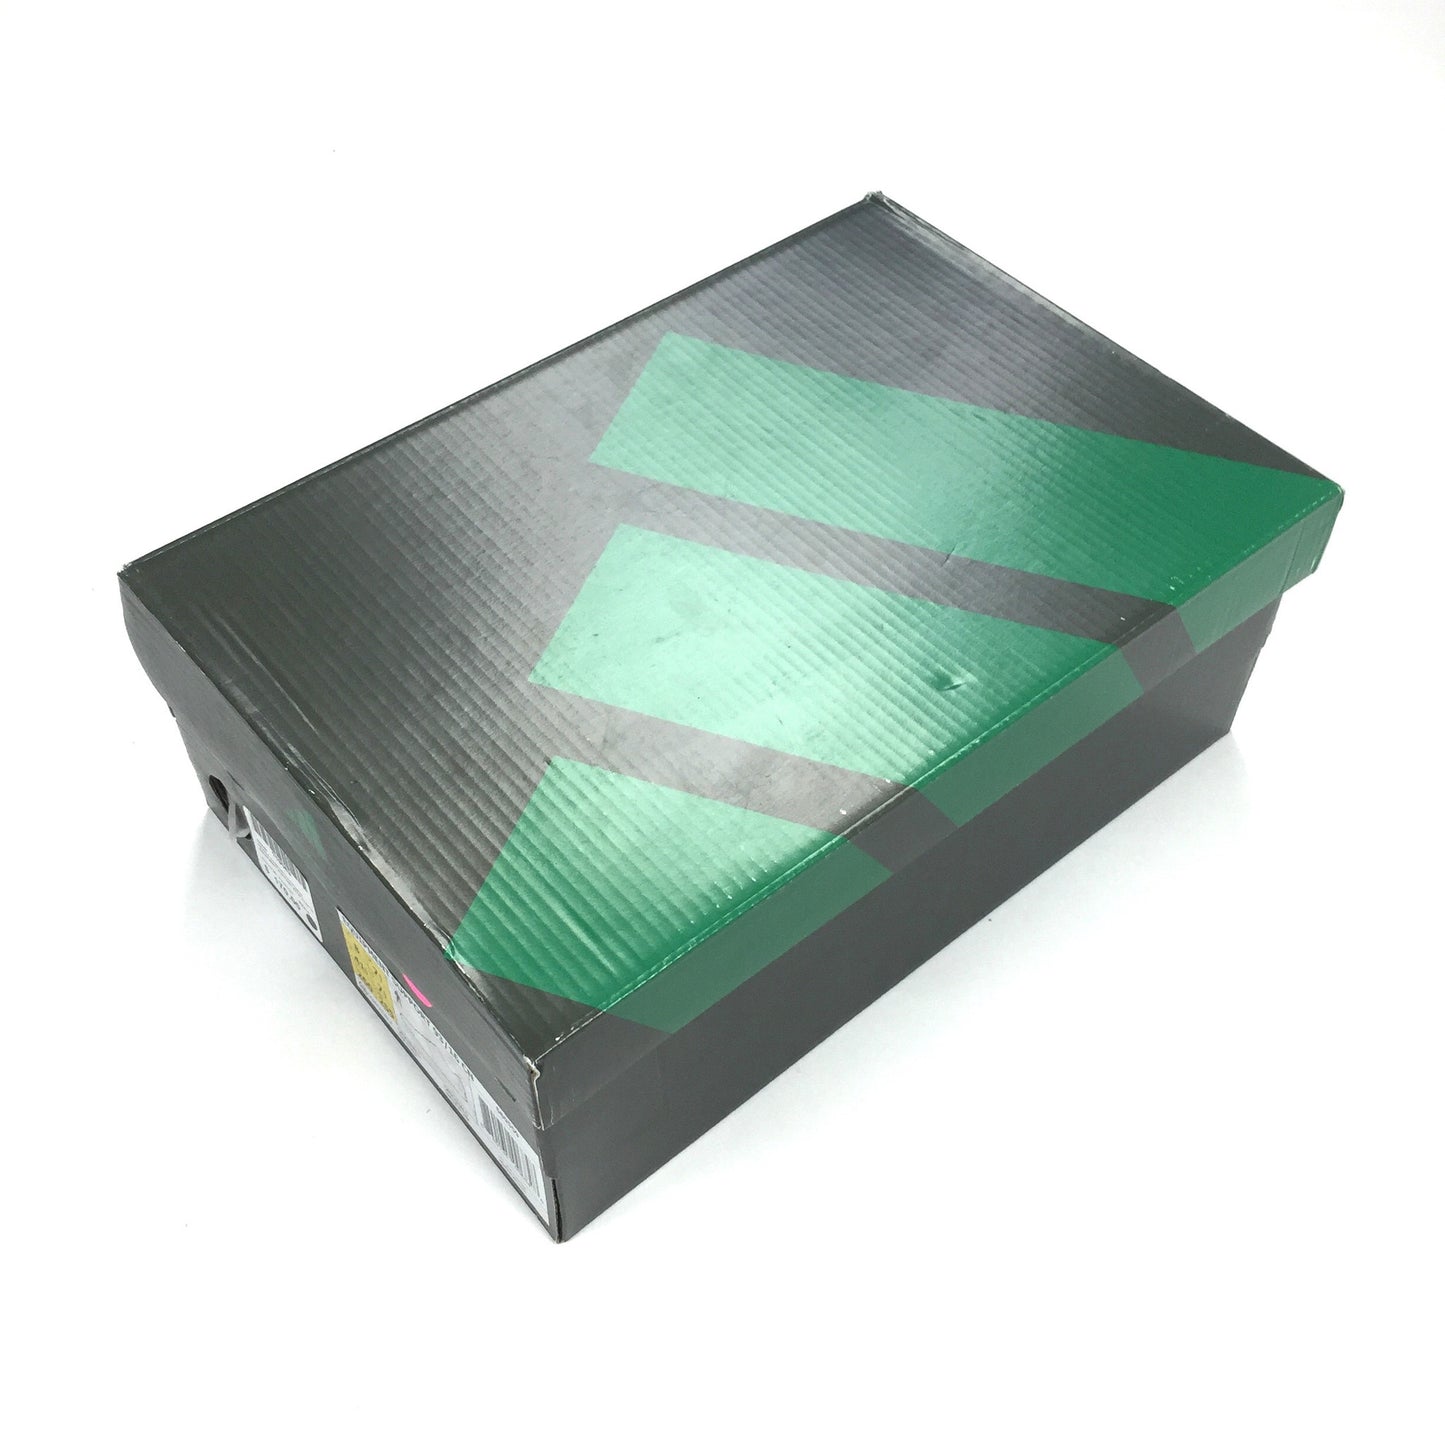 Adidas x Concepts - EQT Support 93 Ultra Boost